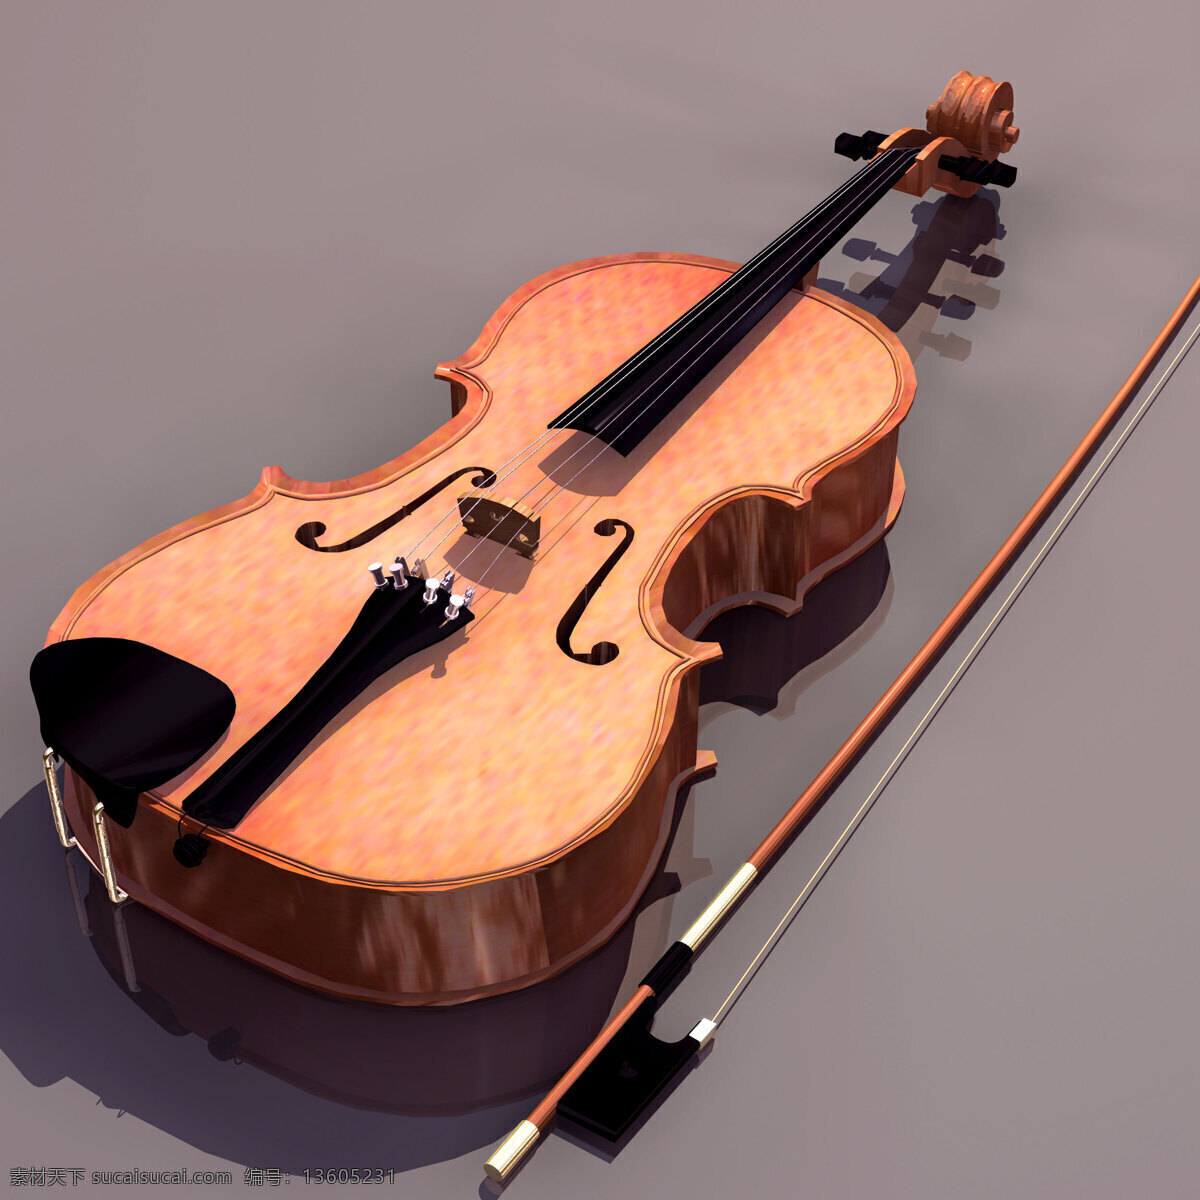 中提琴 乐器 模型 viola 文化用品 乐器模型 3d模型素材 电器模型